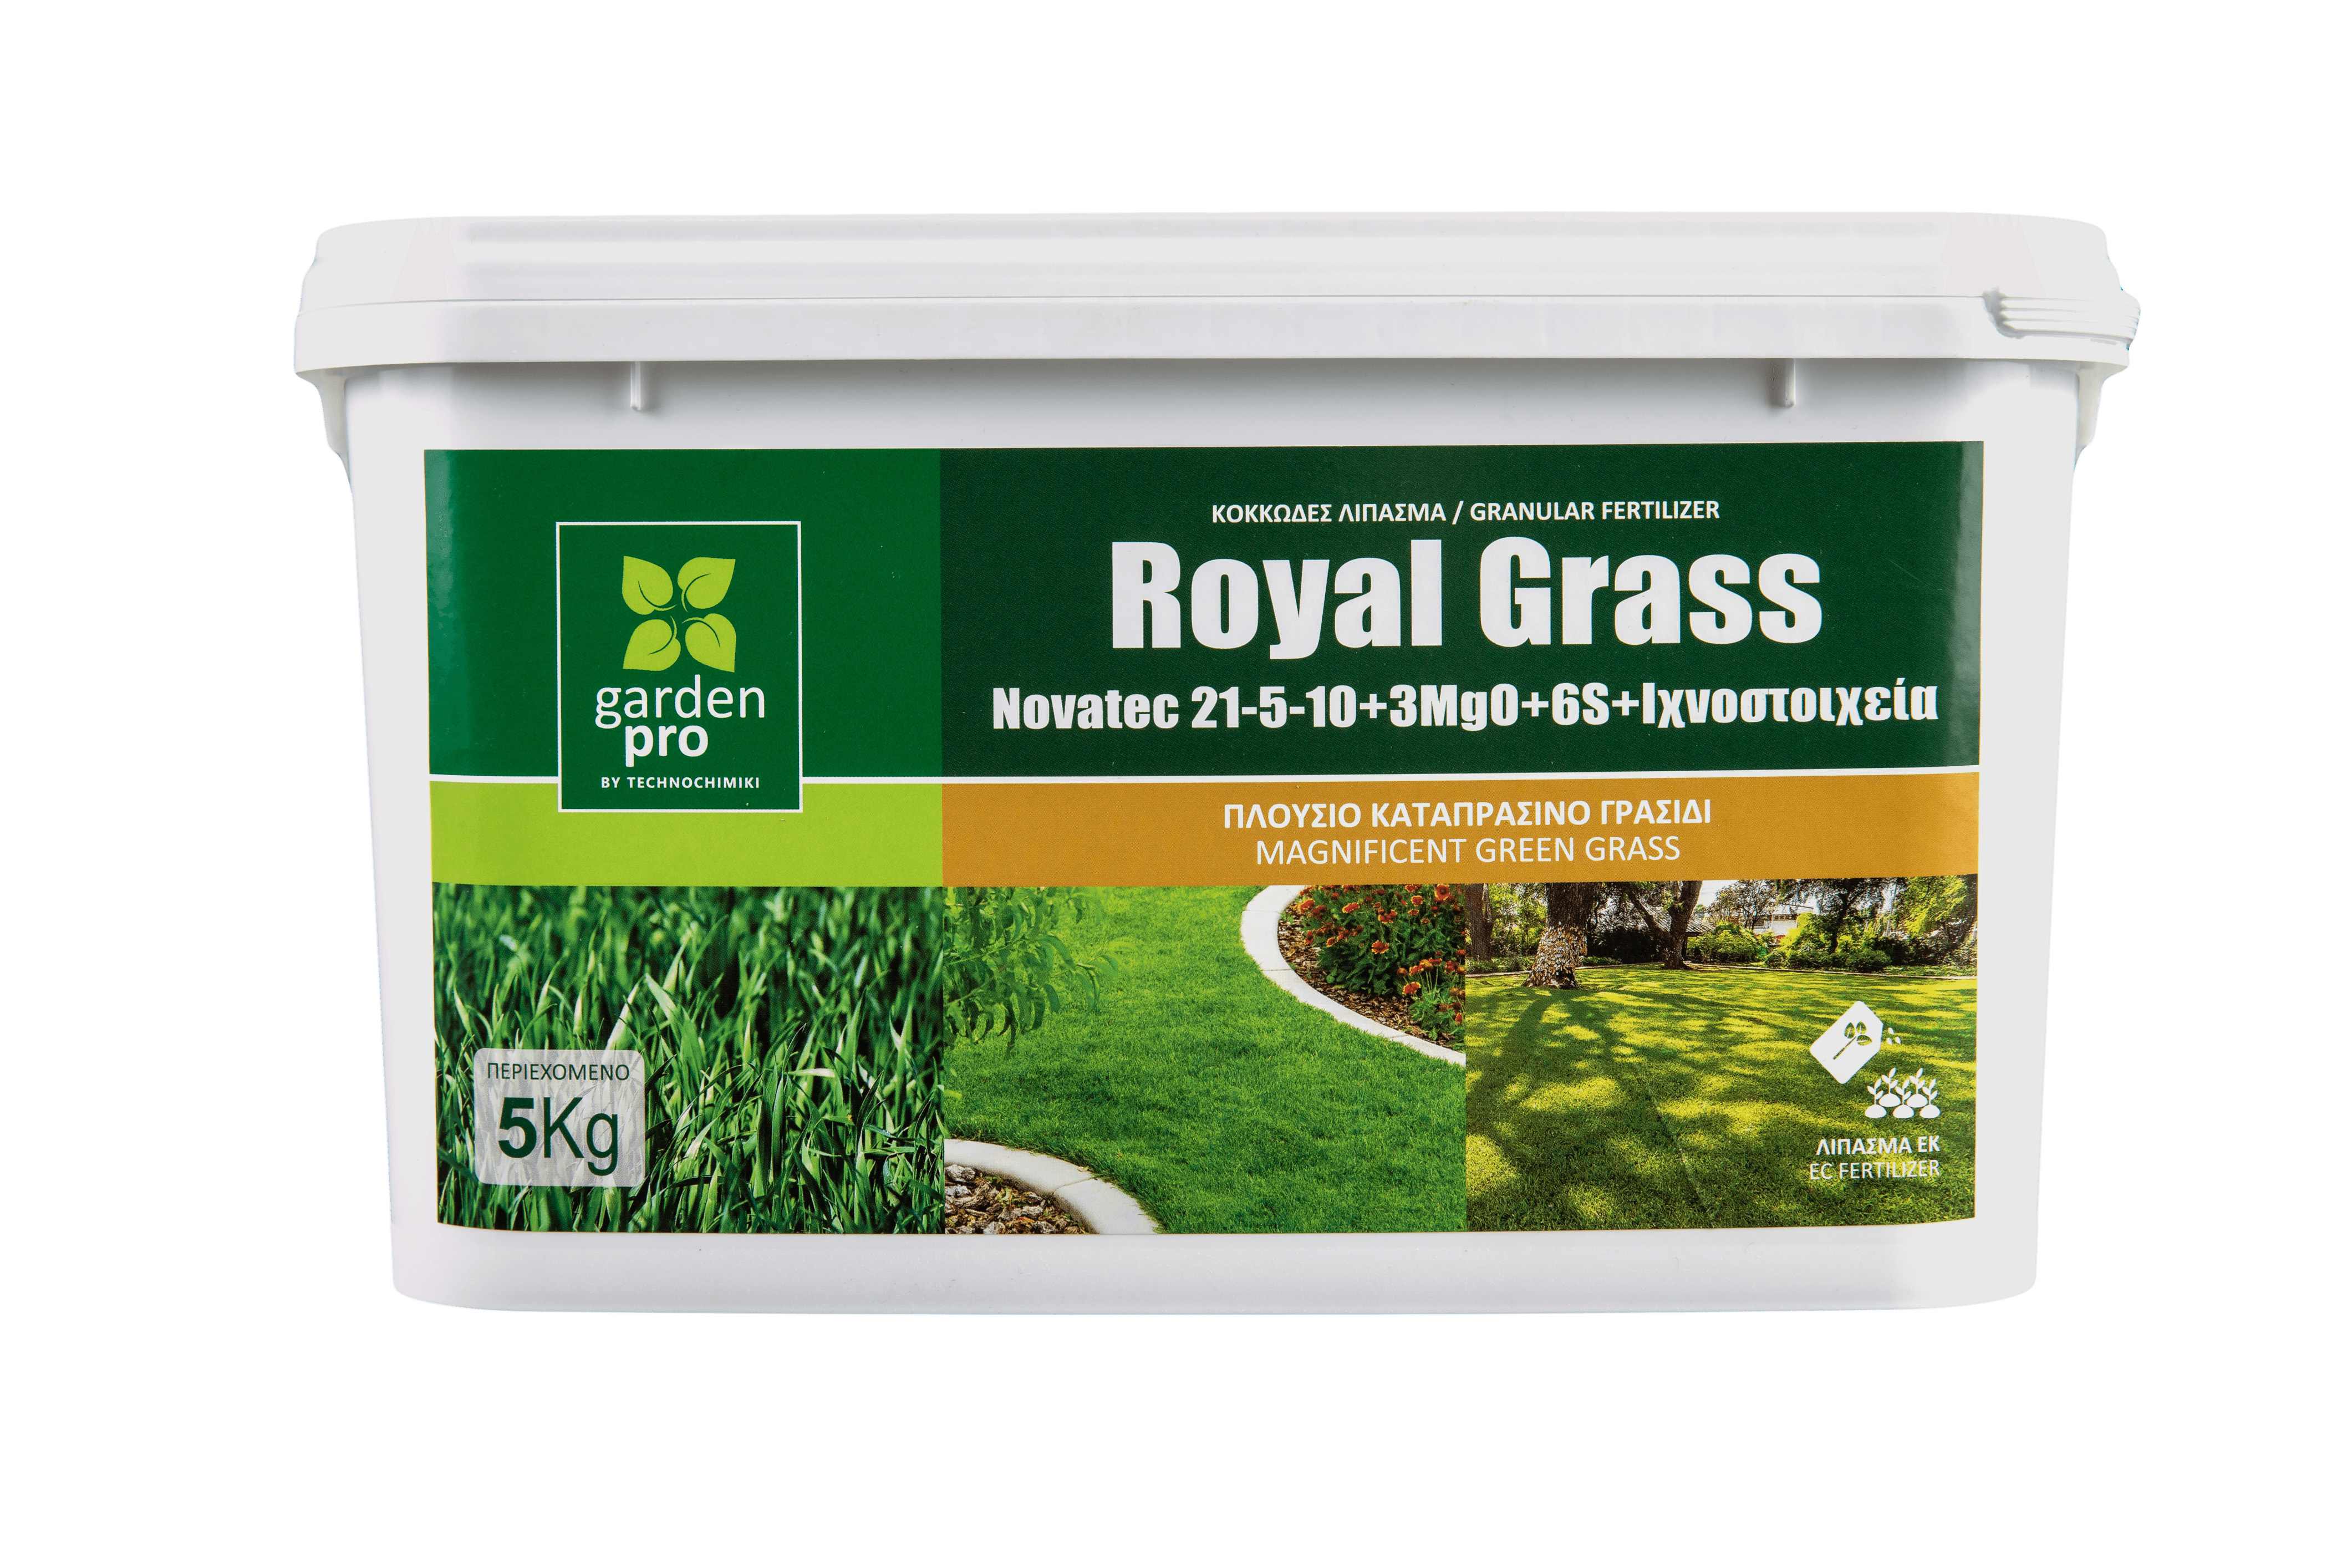 GARDEN PRO ROYAL GRASS NOV 21-5-10 5KG